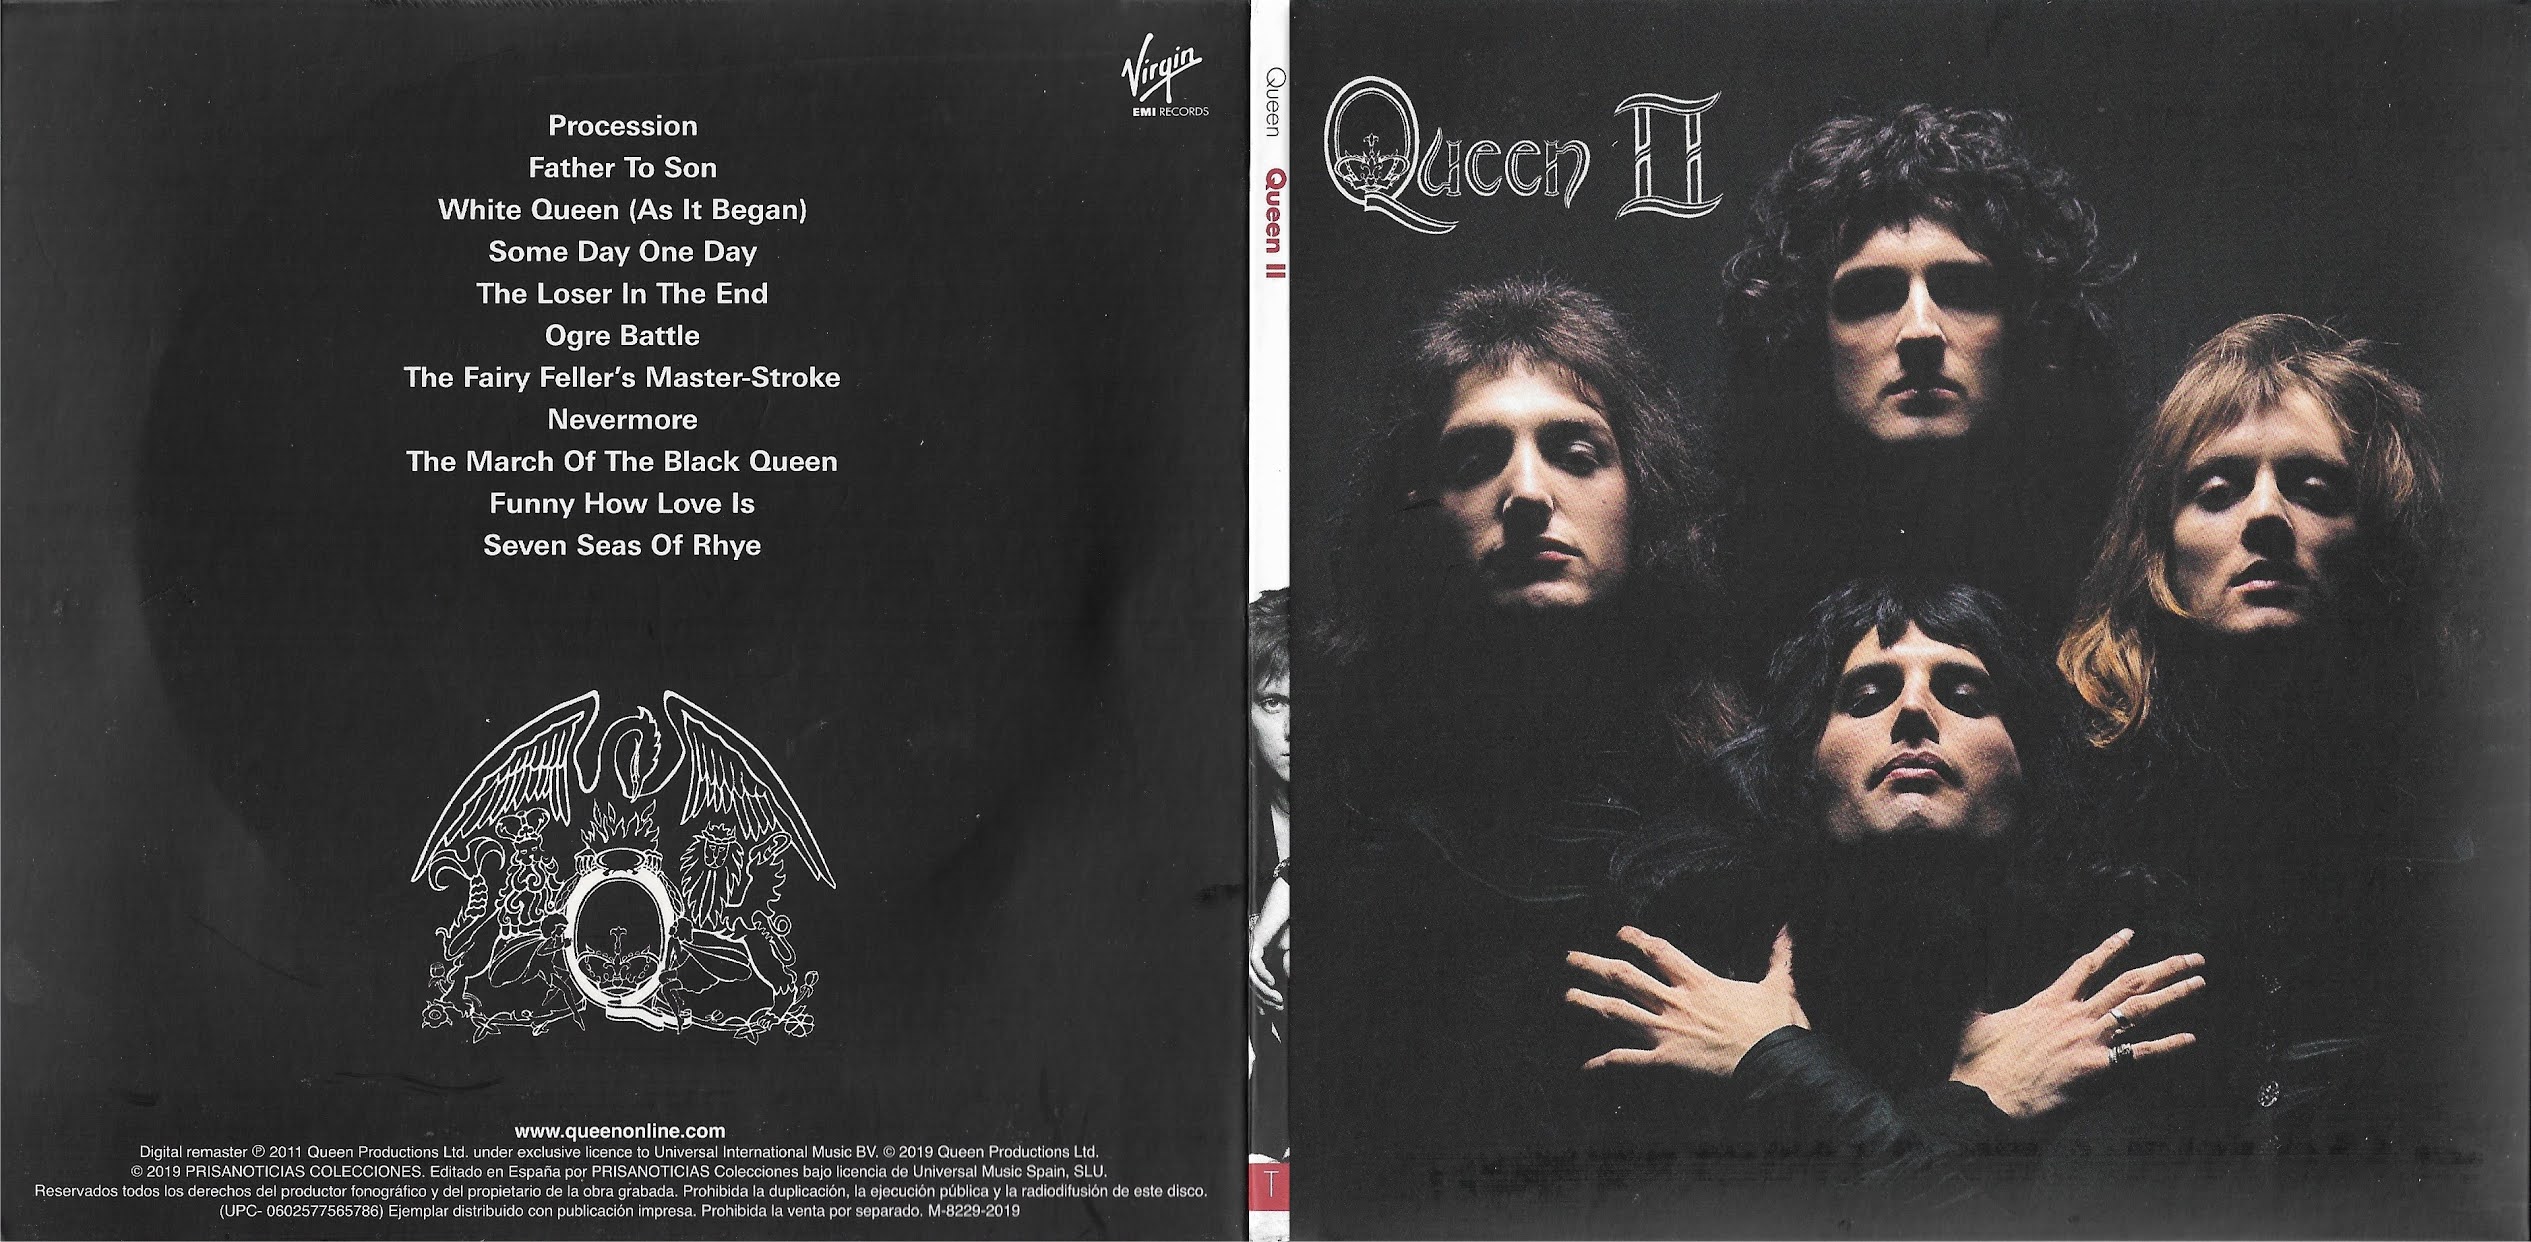 queen 1974 tour dates